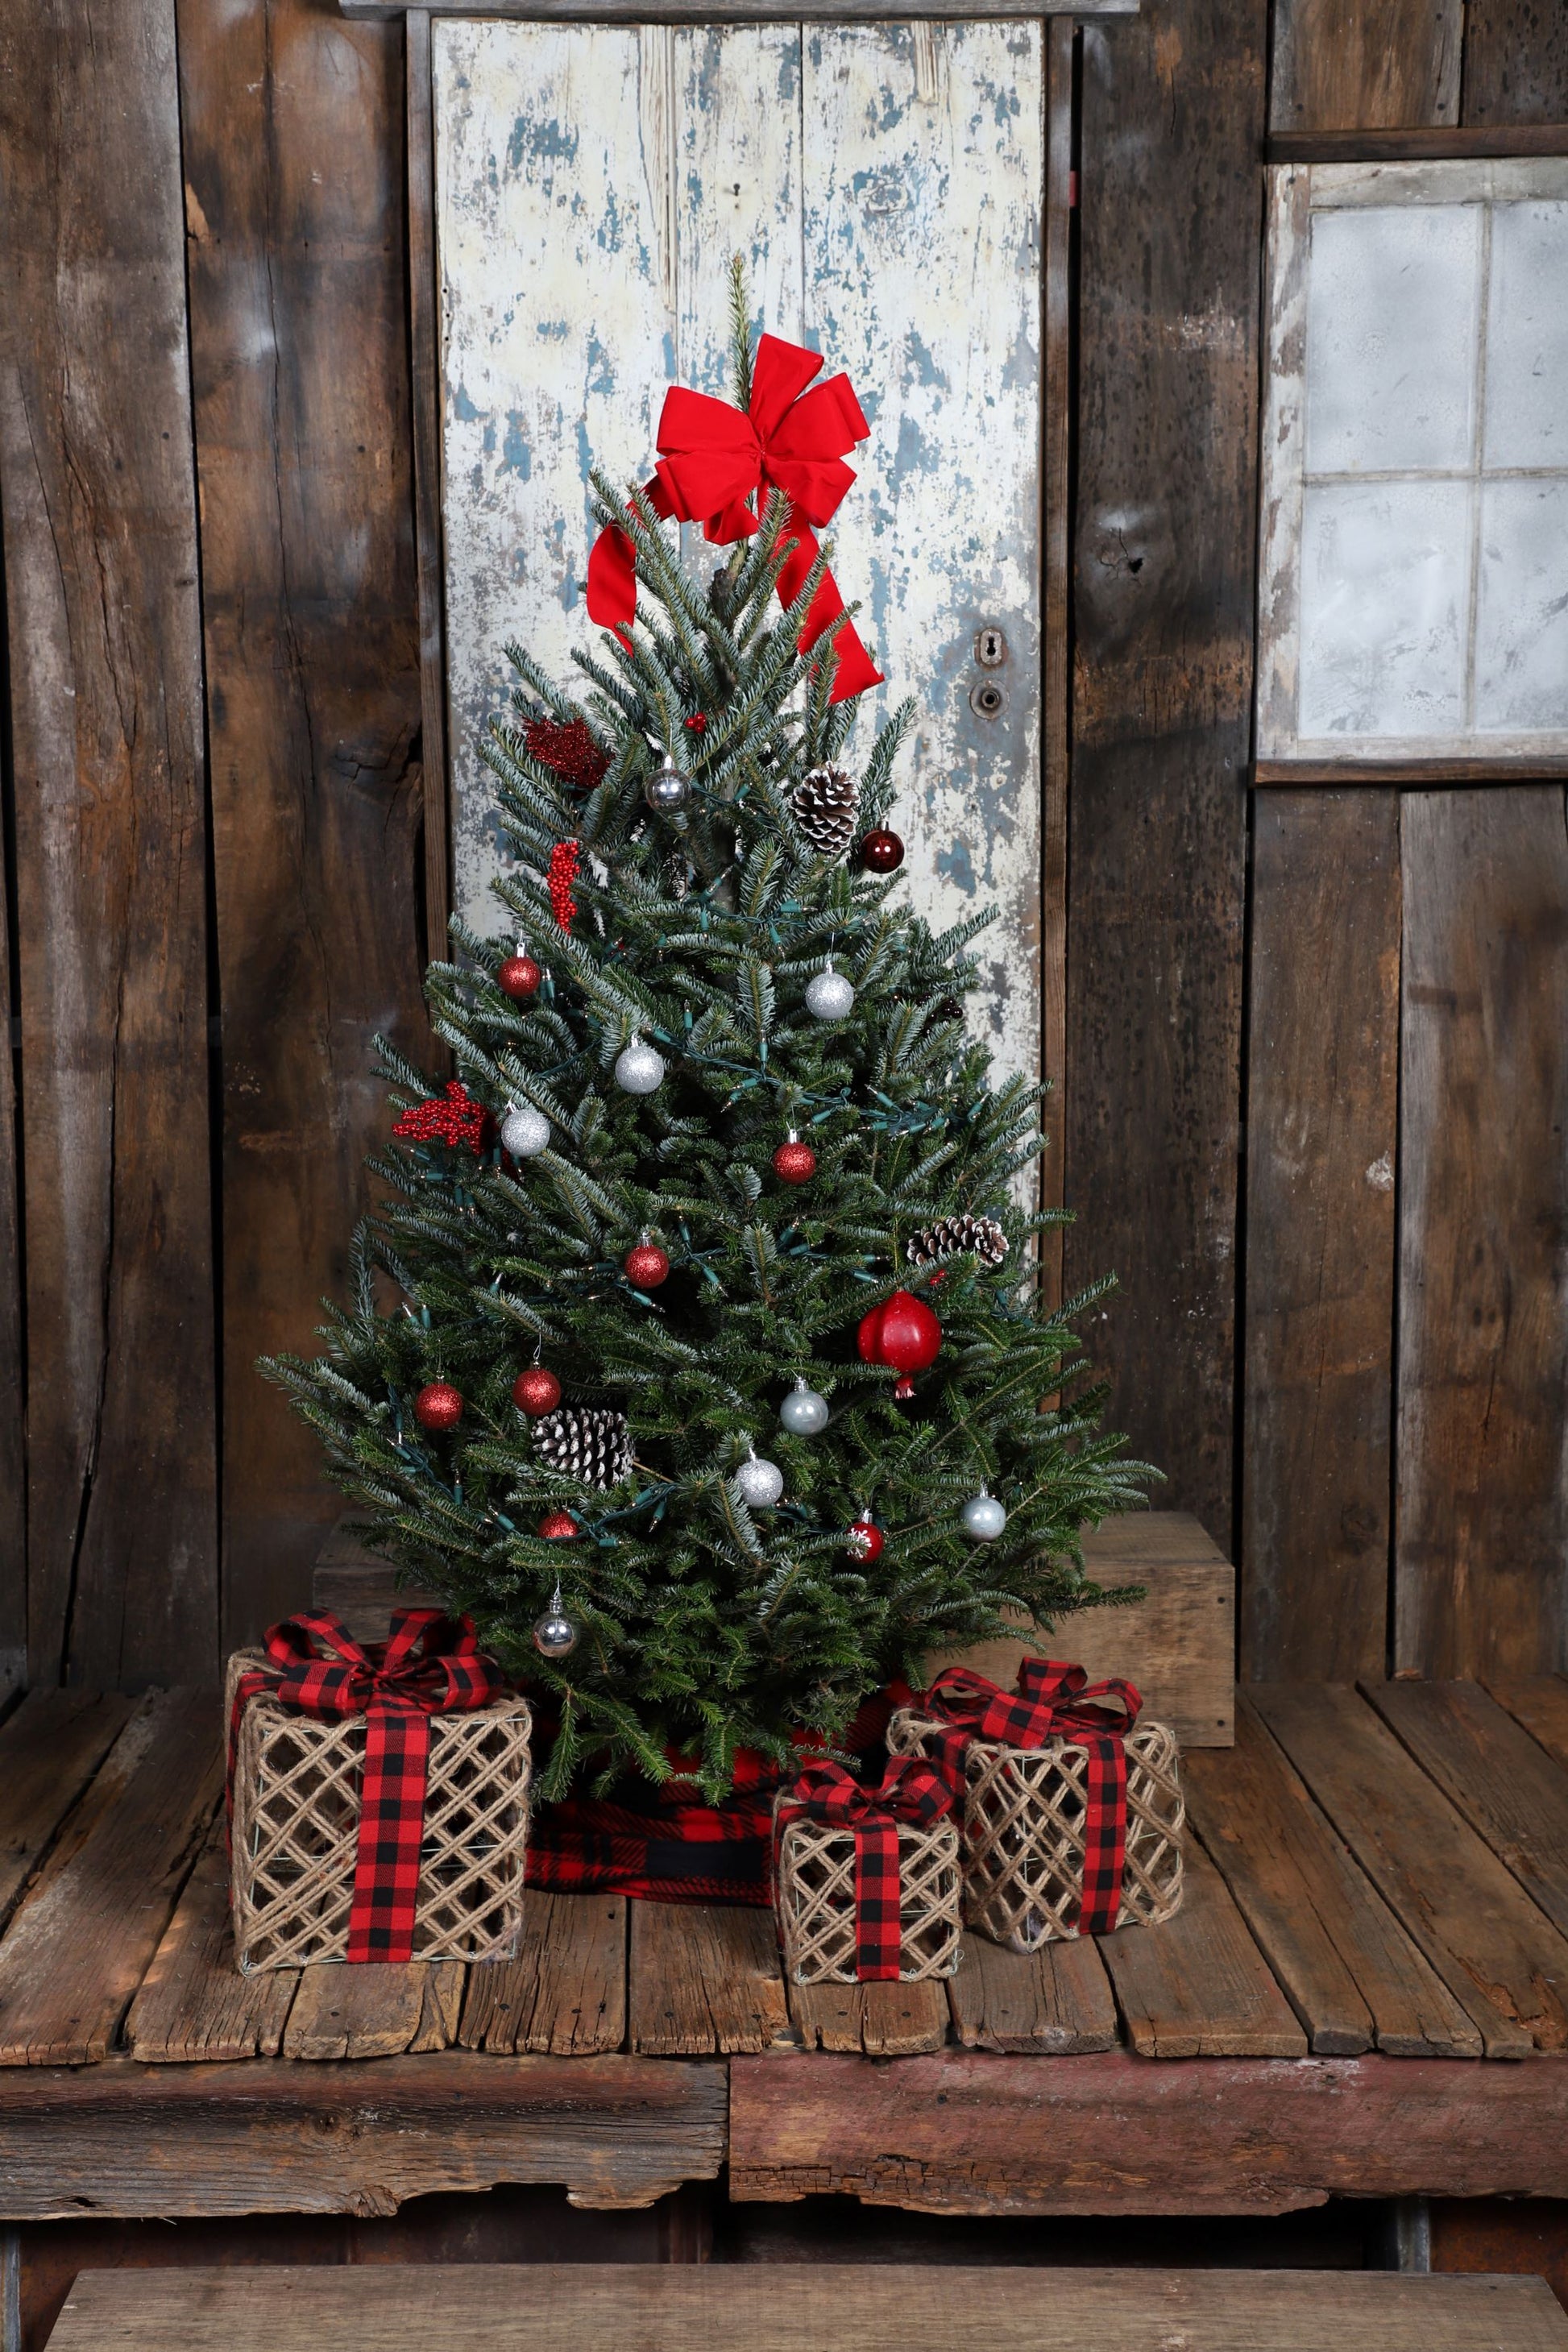 Beauty of Christmas Give-A-Tree Card. Every Cart Plants A Tree